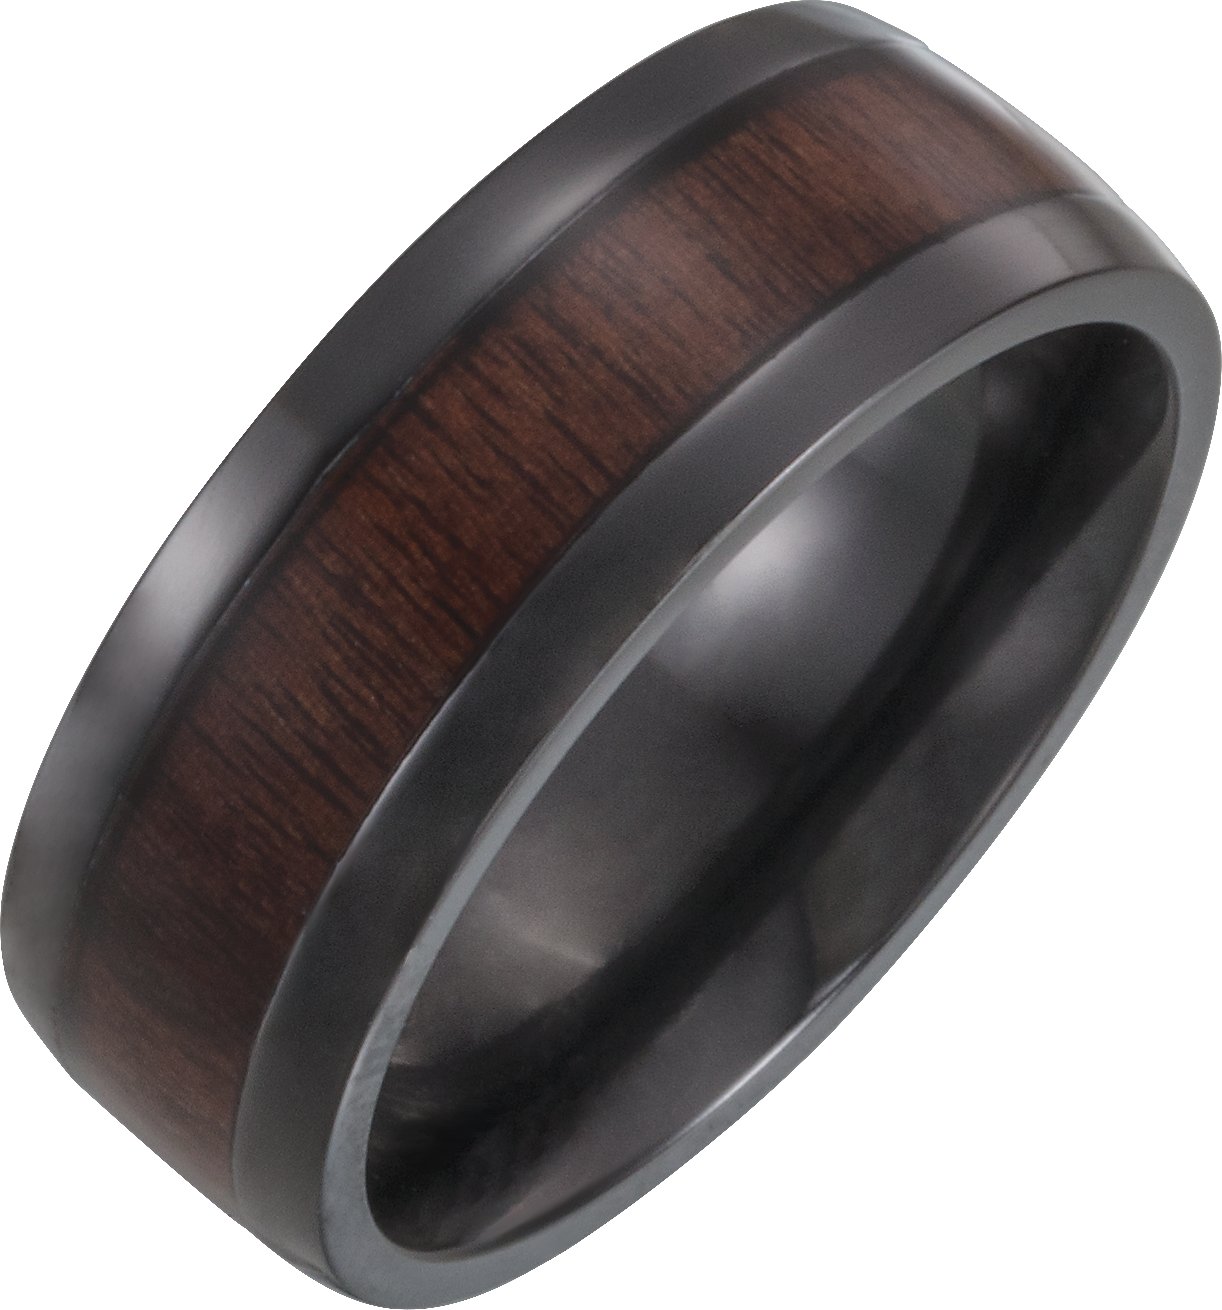 Black Titanium 8 mm Beveled-Edge Band with Wood Inlay Size 11.5